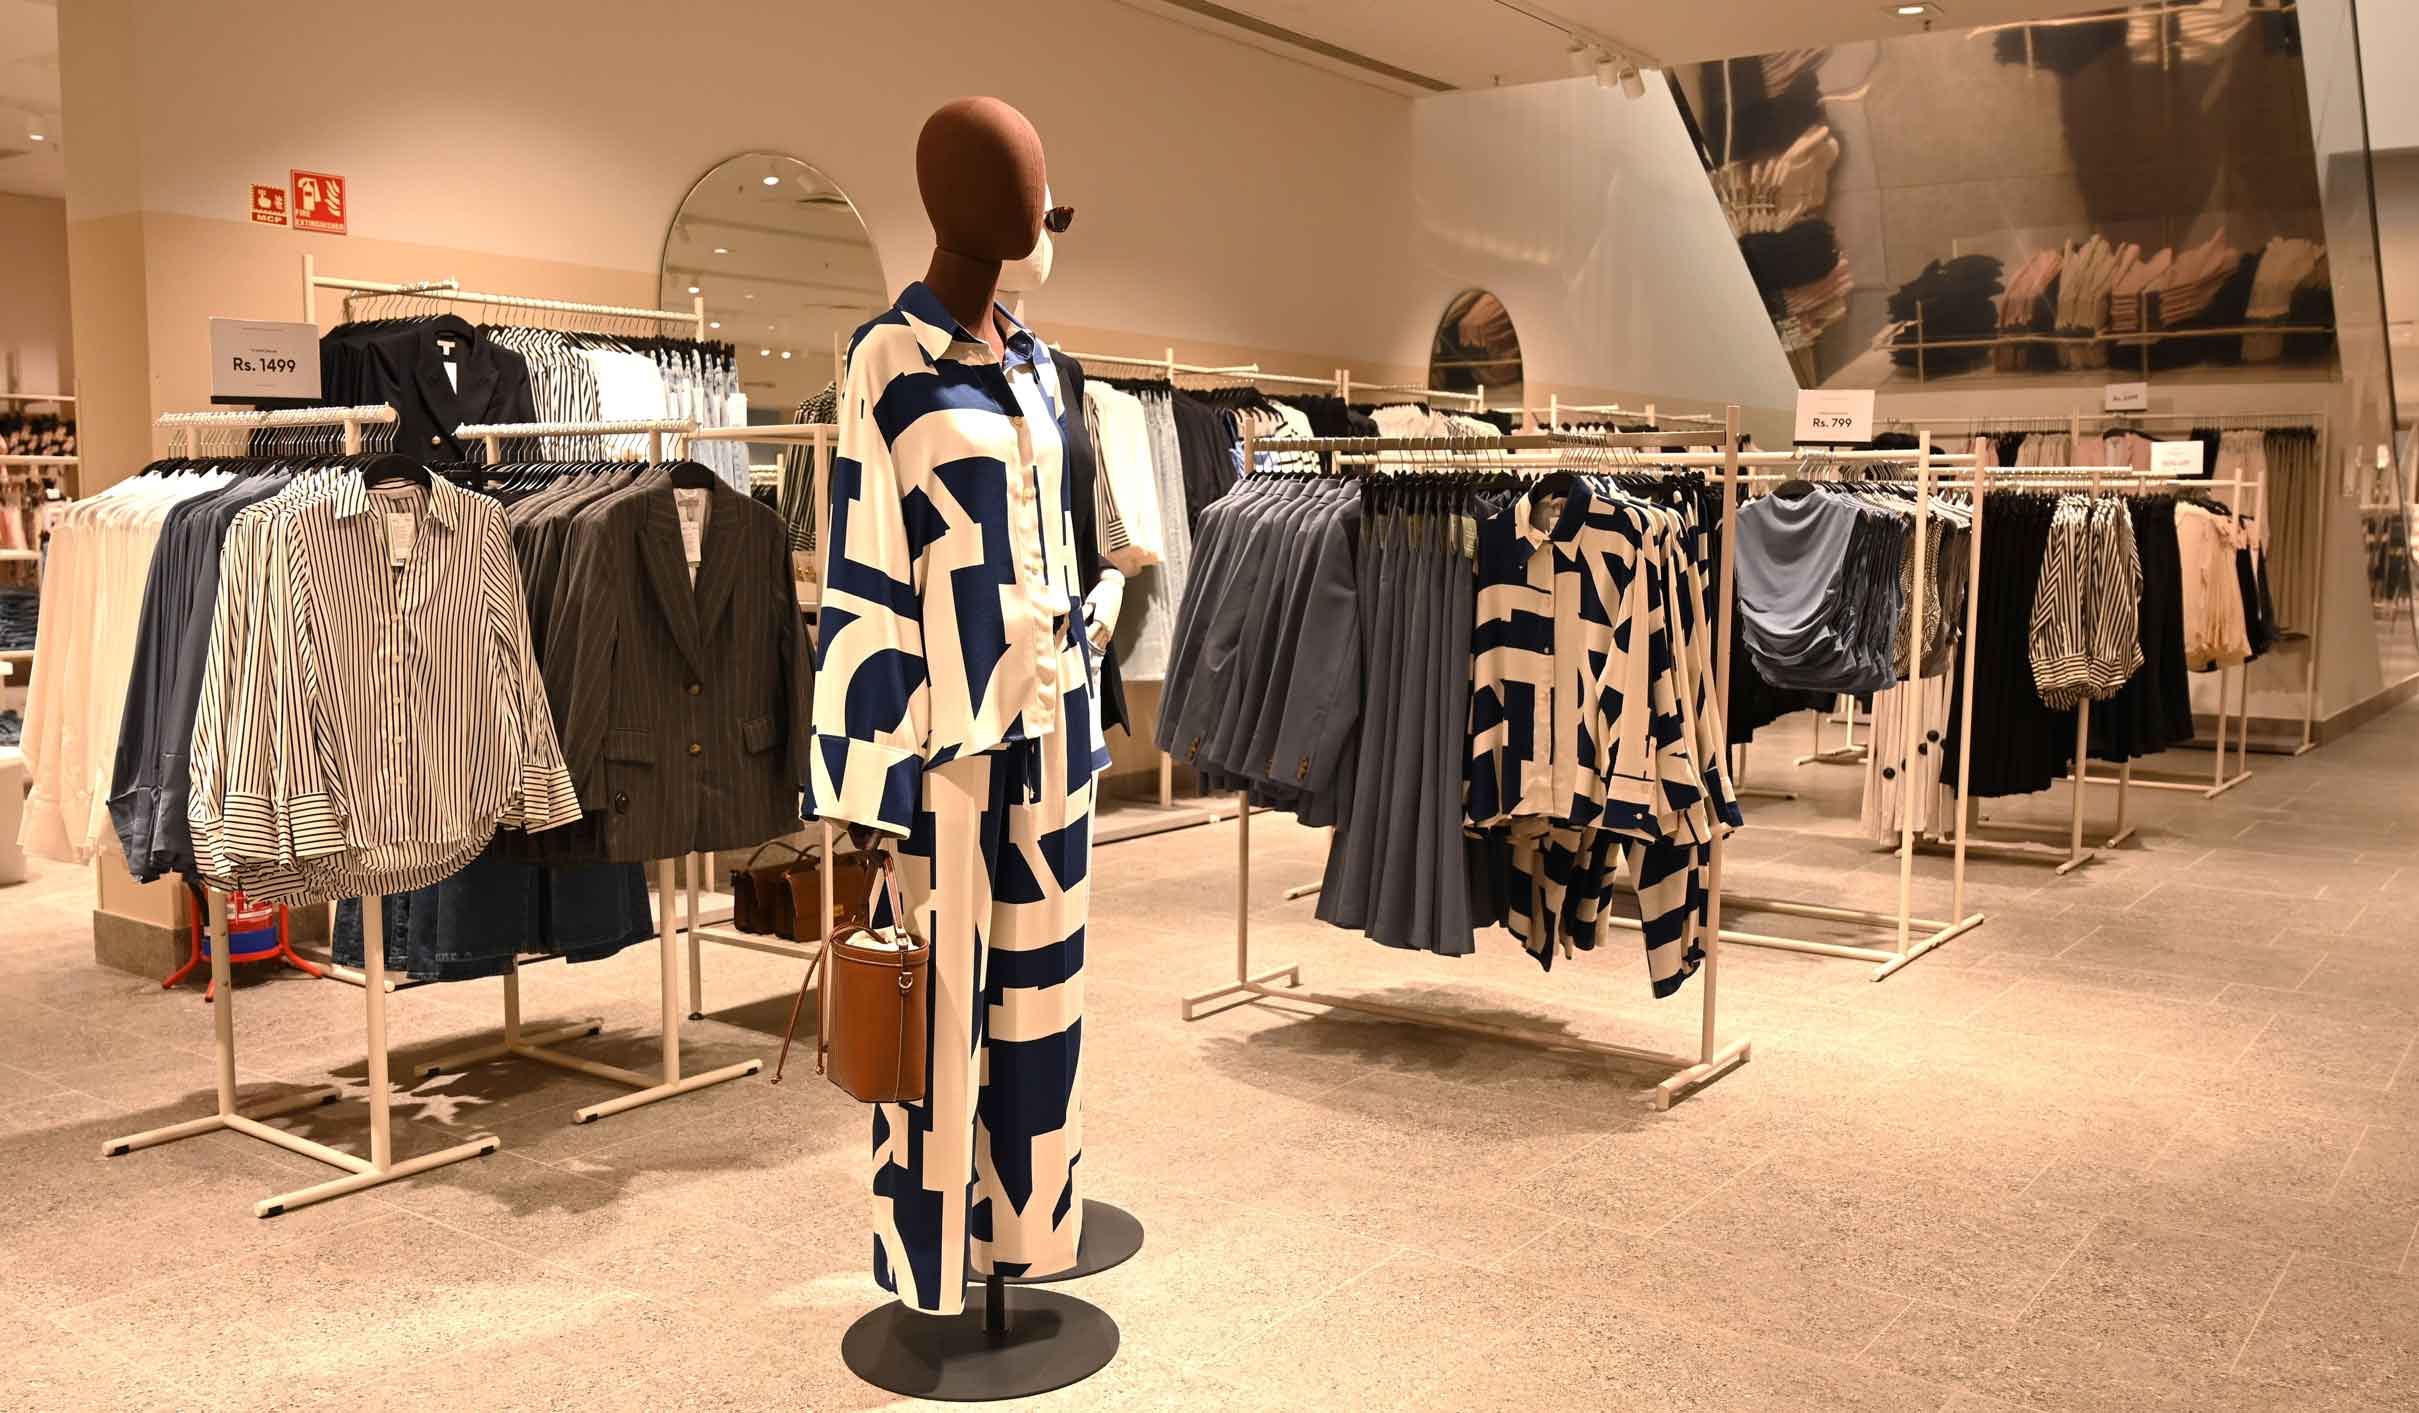 H&M ladies wears, mannequin display at Bnaglore store